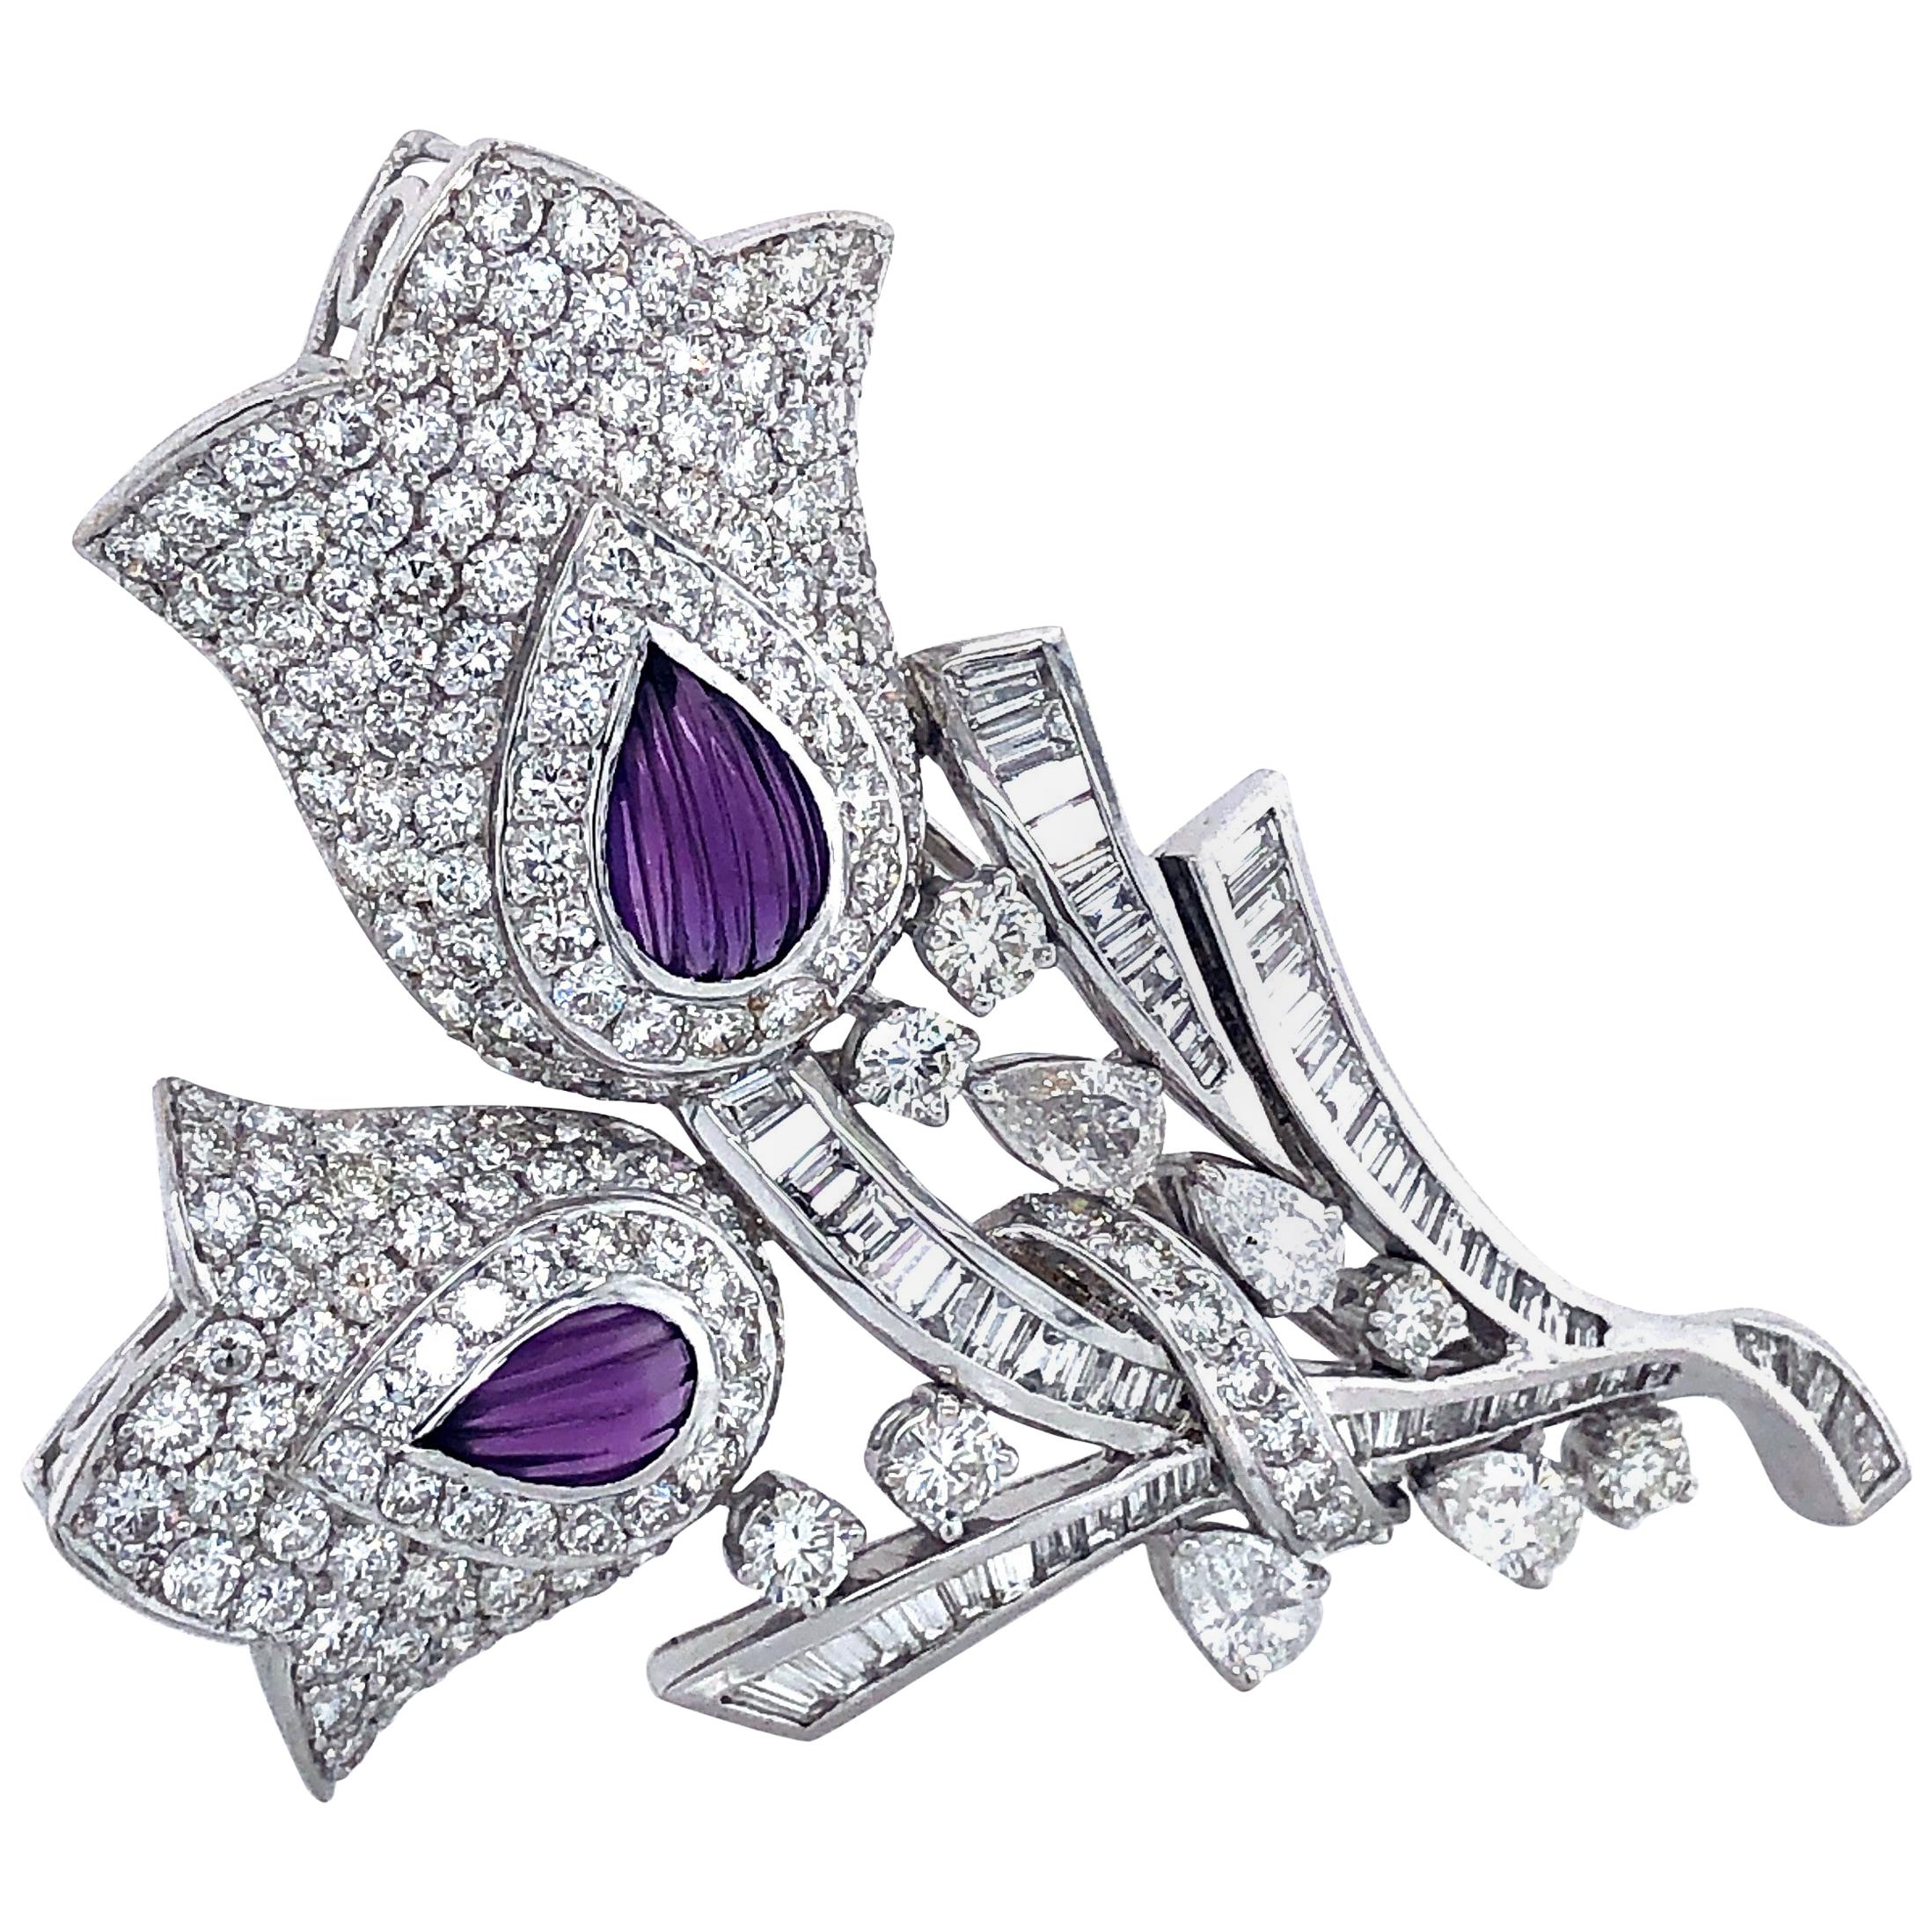 Broche/pendentif fleurs en diamants brillants, baguettes, marquises et topaze